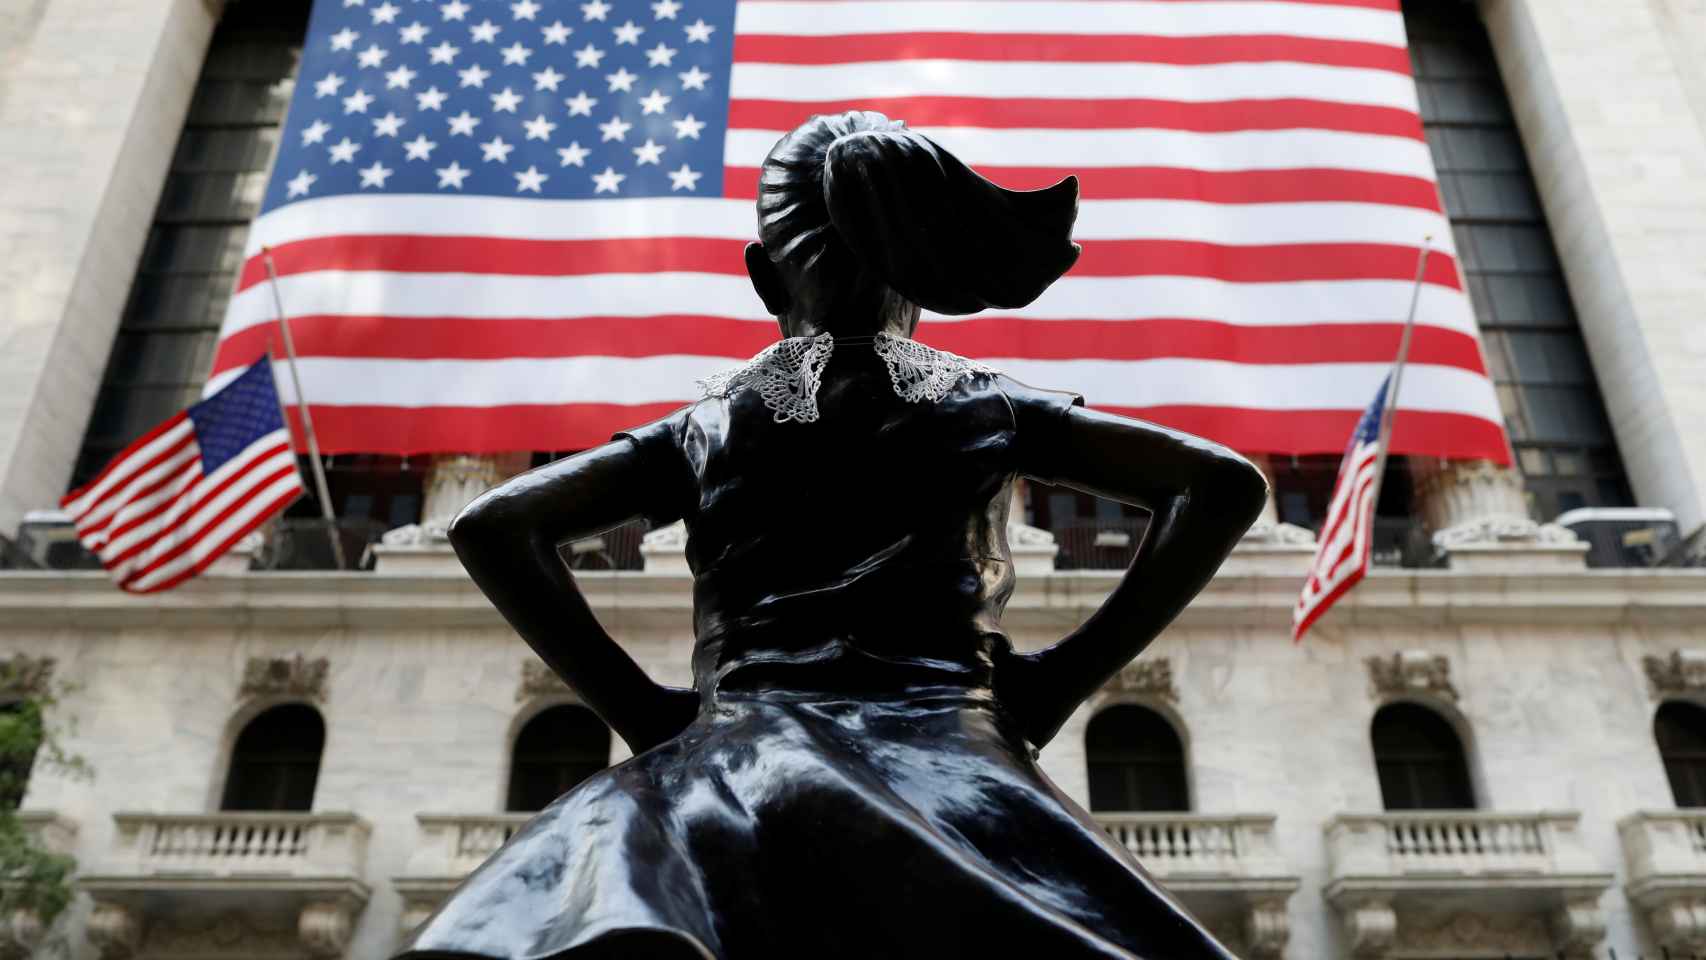 Monumento de una niña frente a la fachada de la Bolsa de Nueva York.